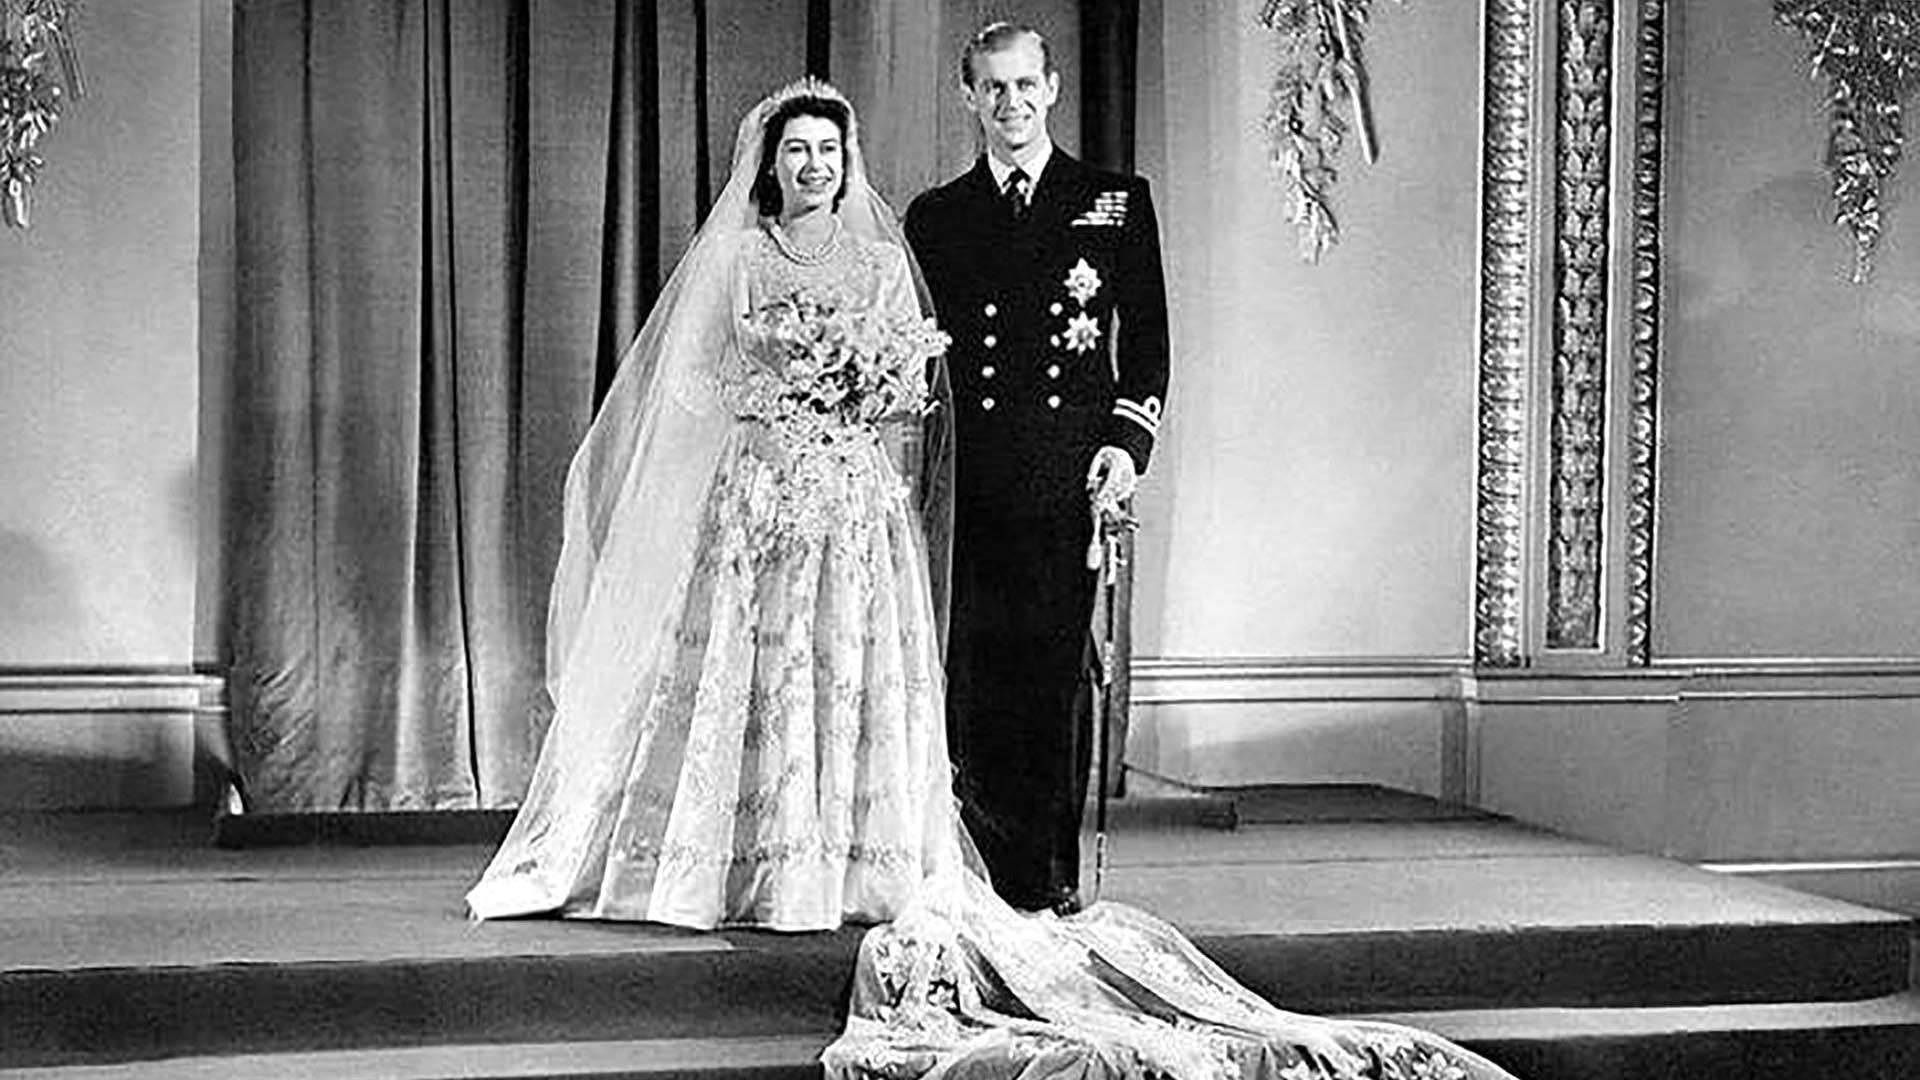 La historia de amor de Isabel II y Felipe de Edimburgo: impresionante boda real, presiones de Palacio, infidelidades y una unión que duró 73 años